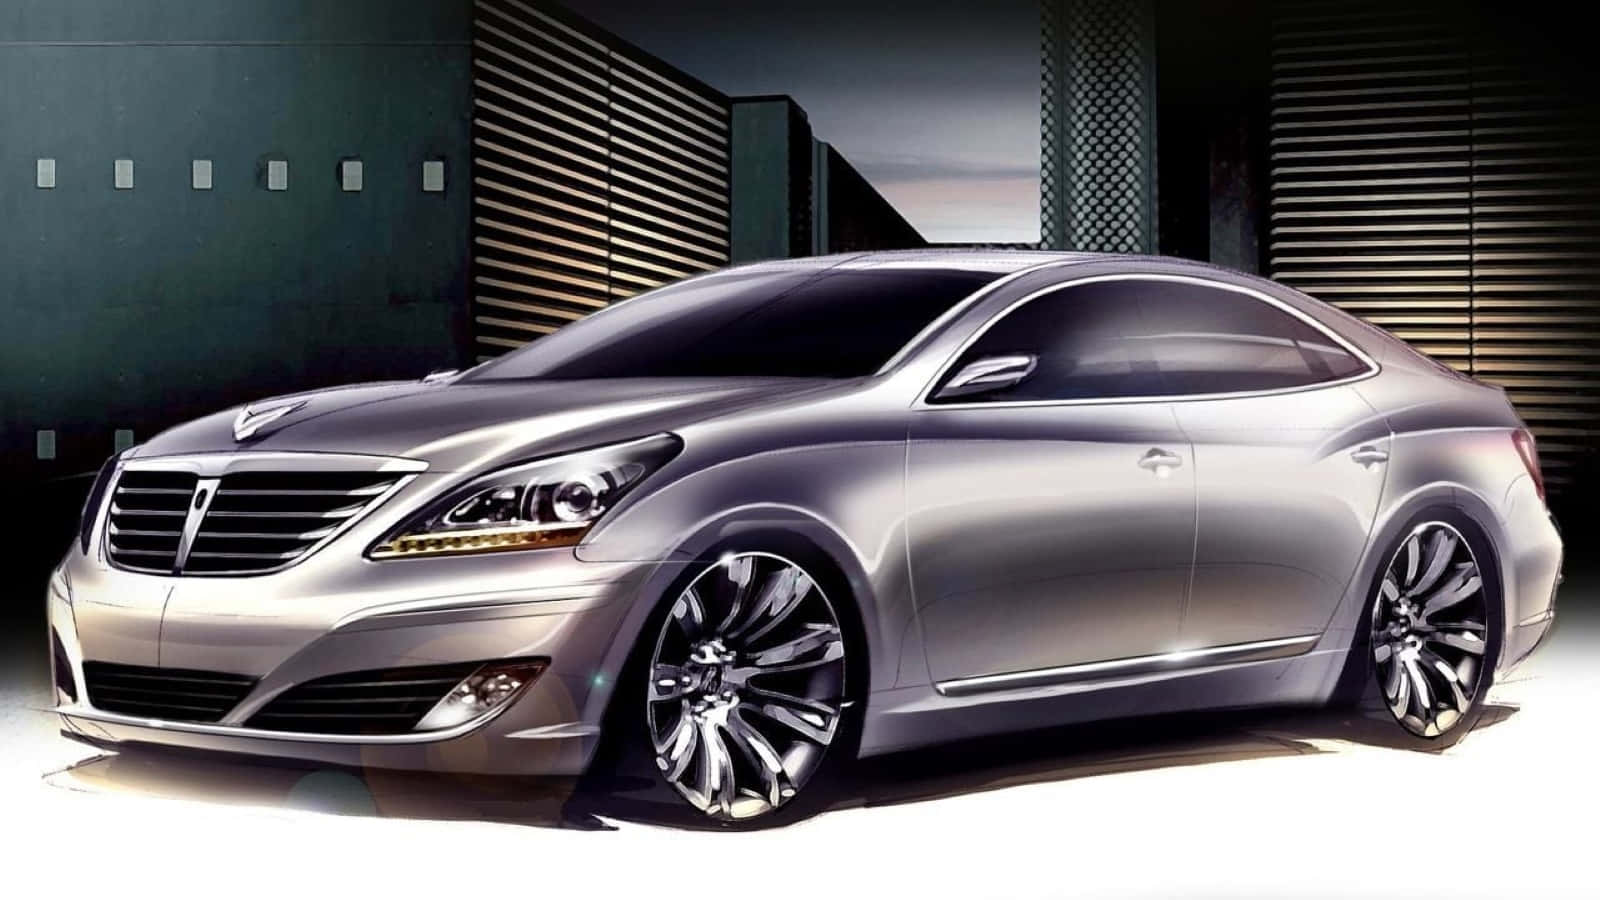 Hyundai Equus - Superior Design and Luxury Wallpaper